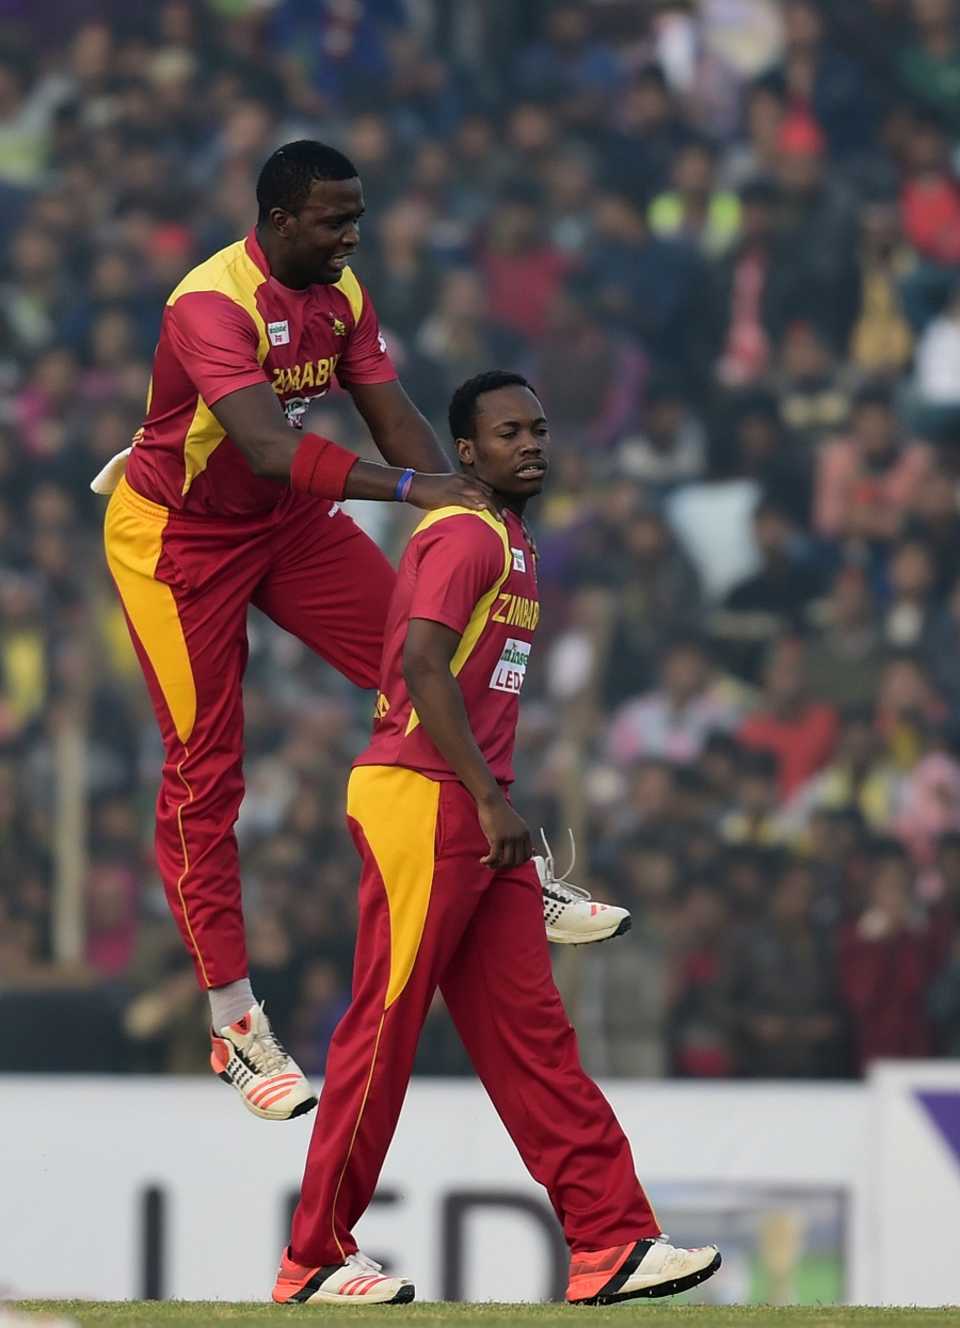 Tendai Chisoro and Neville Madziva led Zimbabwe's bowling effort